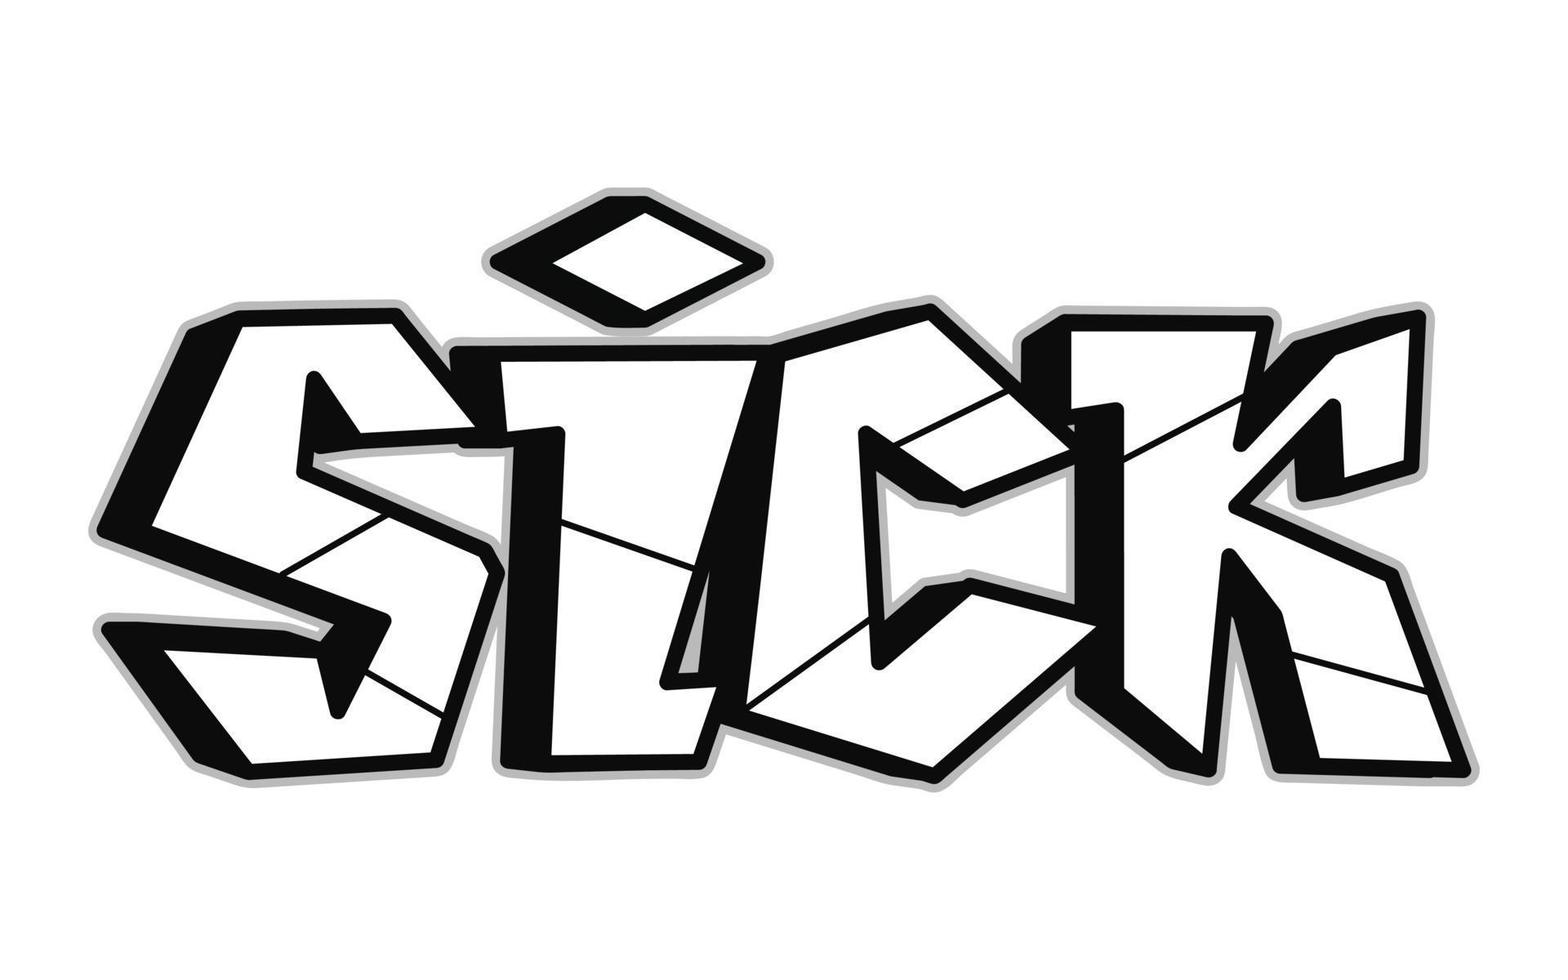 ziek woord trippy psychedelisch graffiti stijl letters.vector hand- getrokken tekening tekenfilm logo ziek illustratie. grappig koel trippy brieven, mode, graffiti stijl afdrukken voor t-shirt, poster concept vector